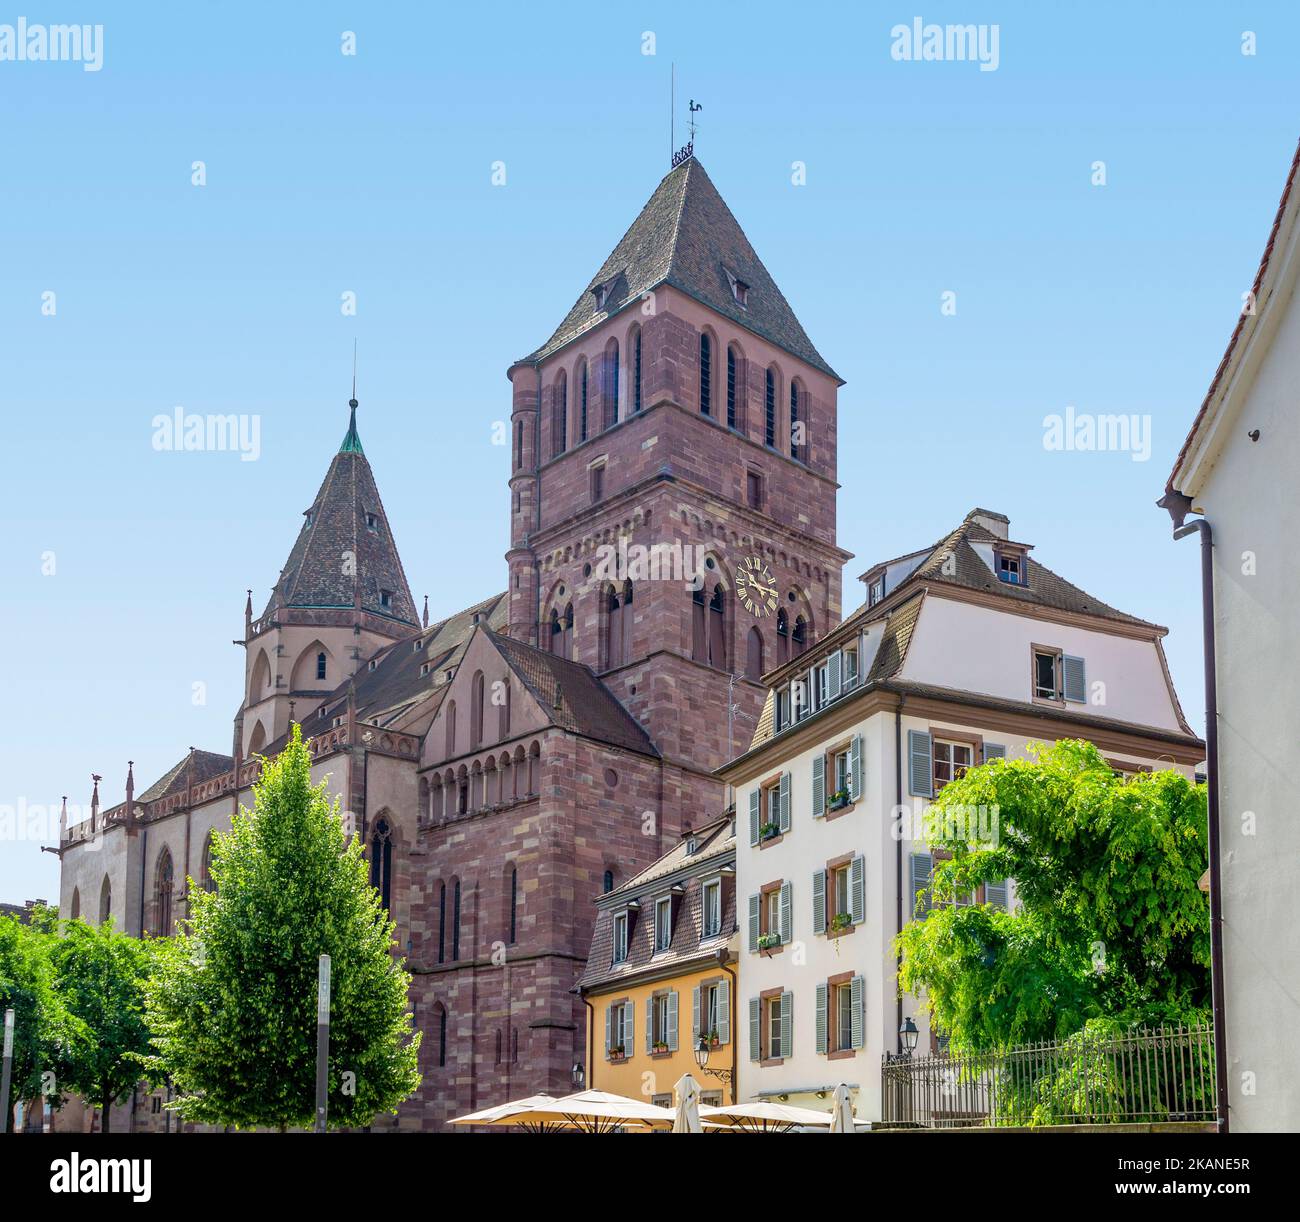 Impression idyllique autour de l'église Saint-Thomas de Strasbourg, une ville de la région Alsace en France Banque D'Images